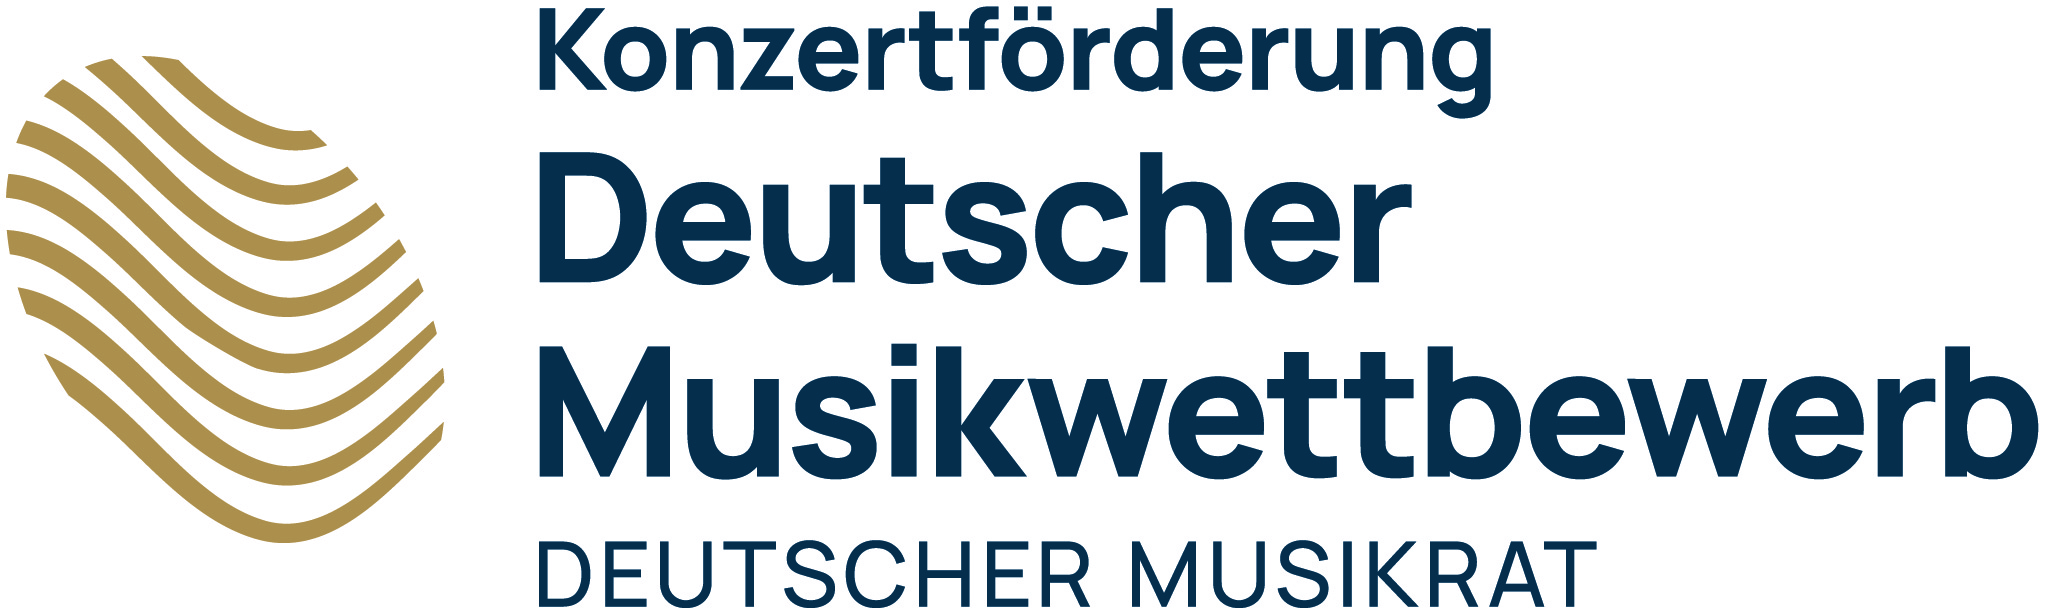 Deutscher Musikwettbewerb